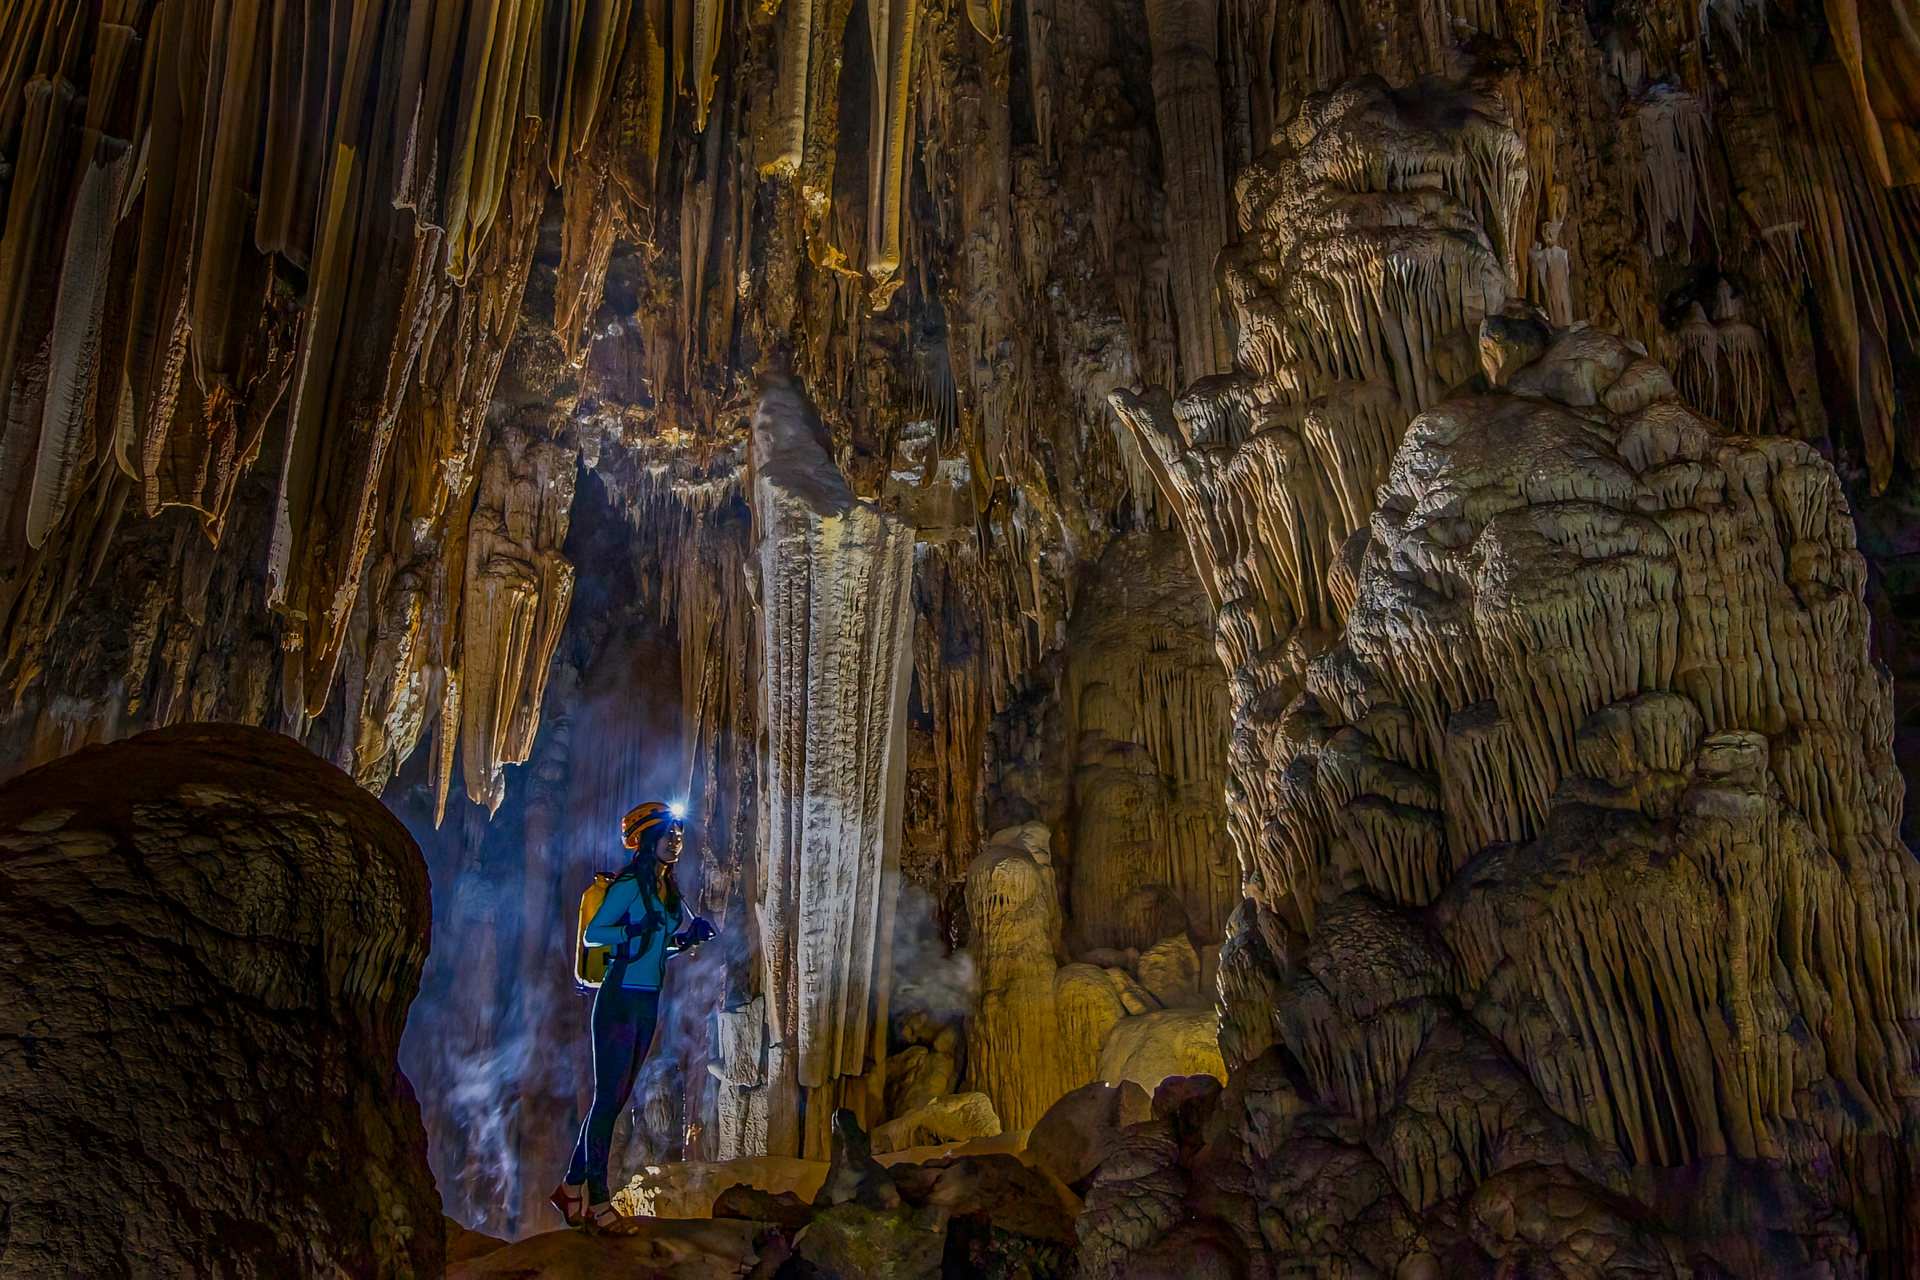 Vẻ đẹp siêu thực trong hang động có hồ nước bí ẩn treo lơ lửng - 8